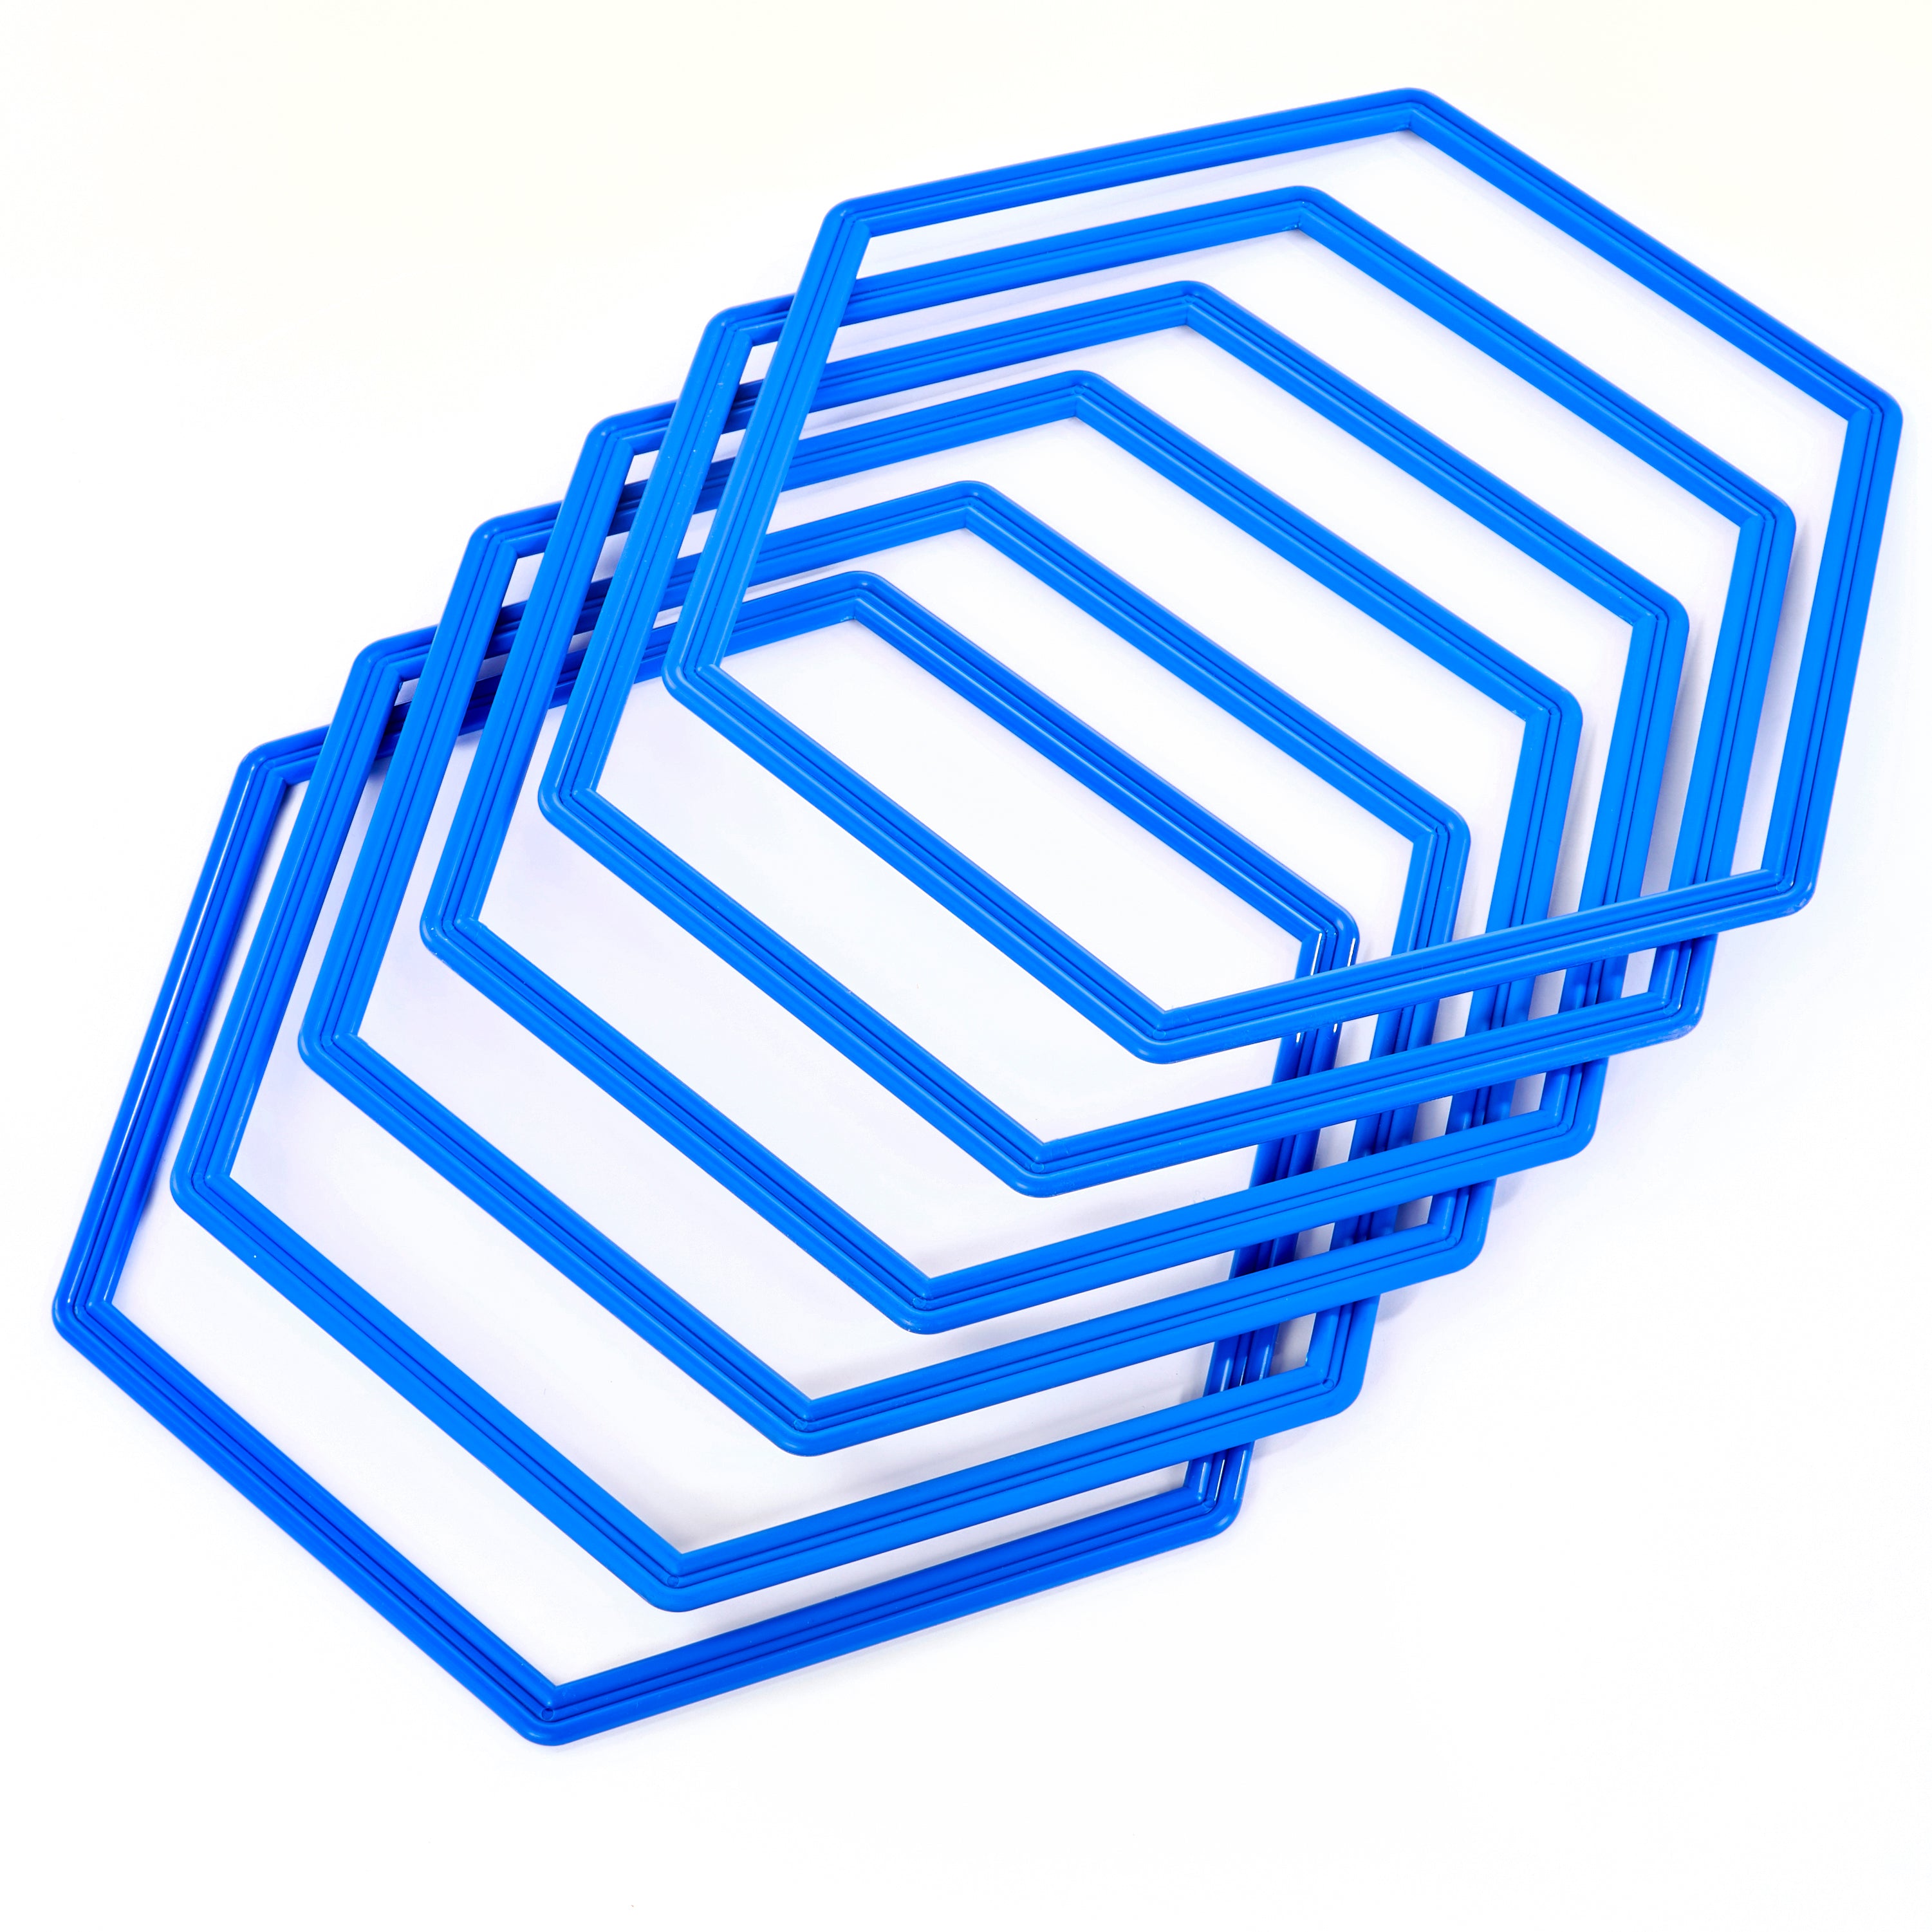 Hexahoops - set of 6 blue hoops